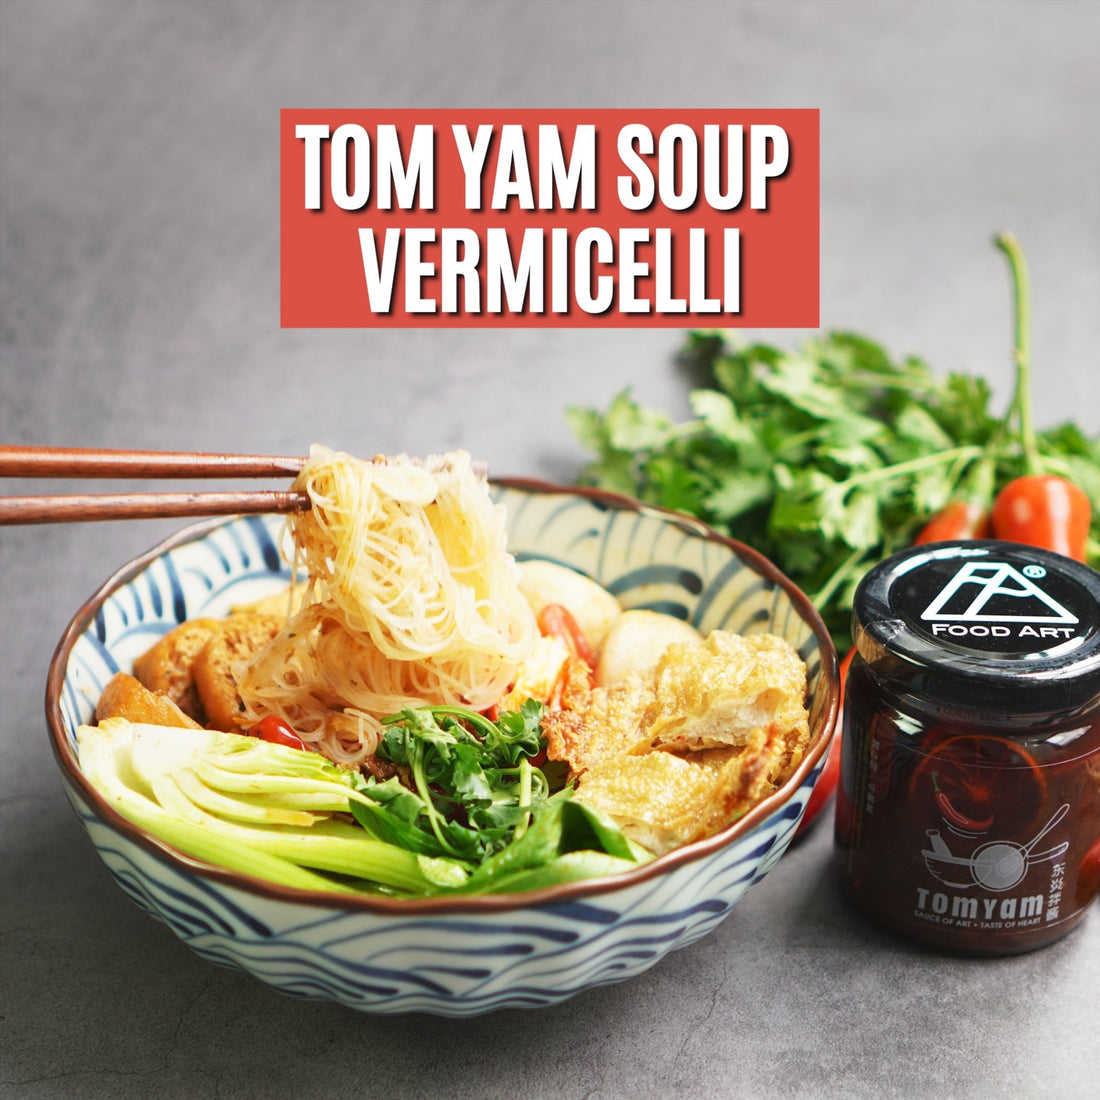 如何轻松，简单的煮出一碗美味的东炎米粉素食汤‼️ 🍜 😋 || Simple, delicious Tomyam Quinoa Vermicelli Vegetarian Soup Recipe 🤩 - Food Art Store